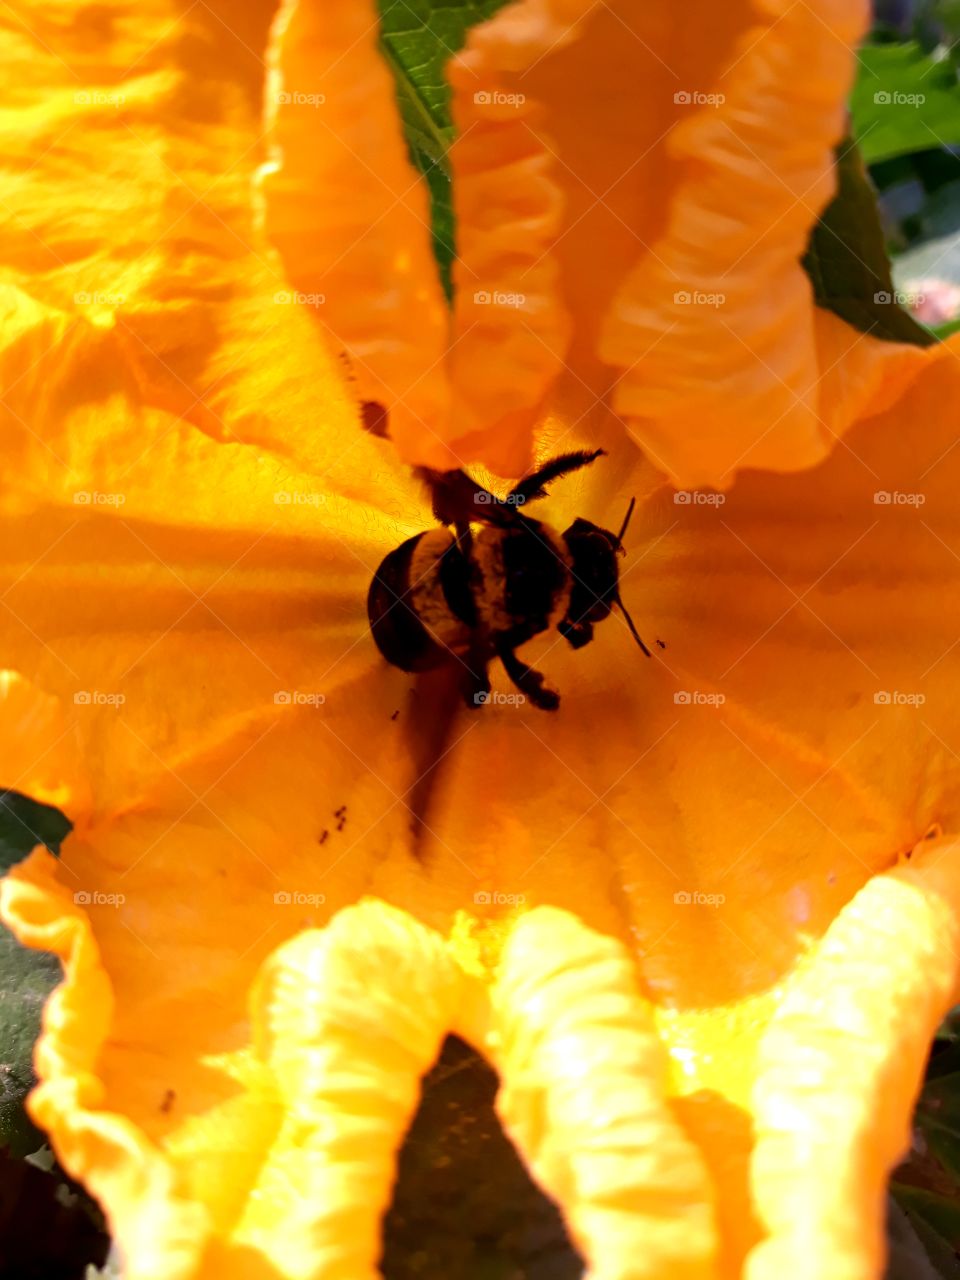 The queen bee enjoying the nectar of a beautiful squash flower in my backyard garden.